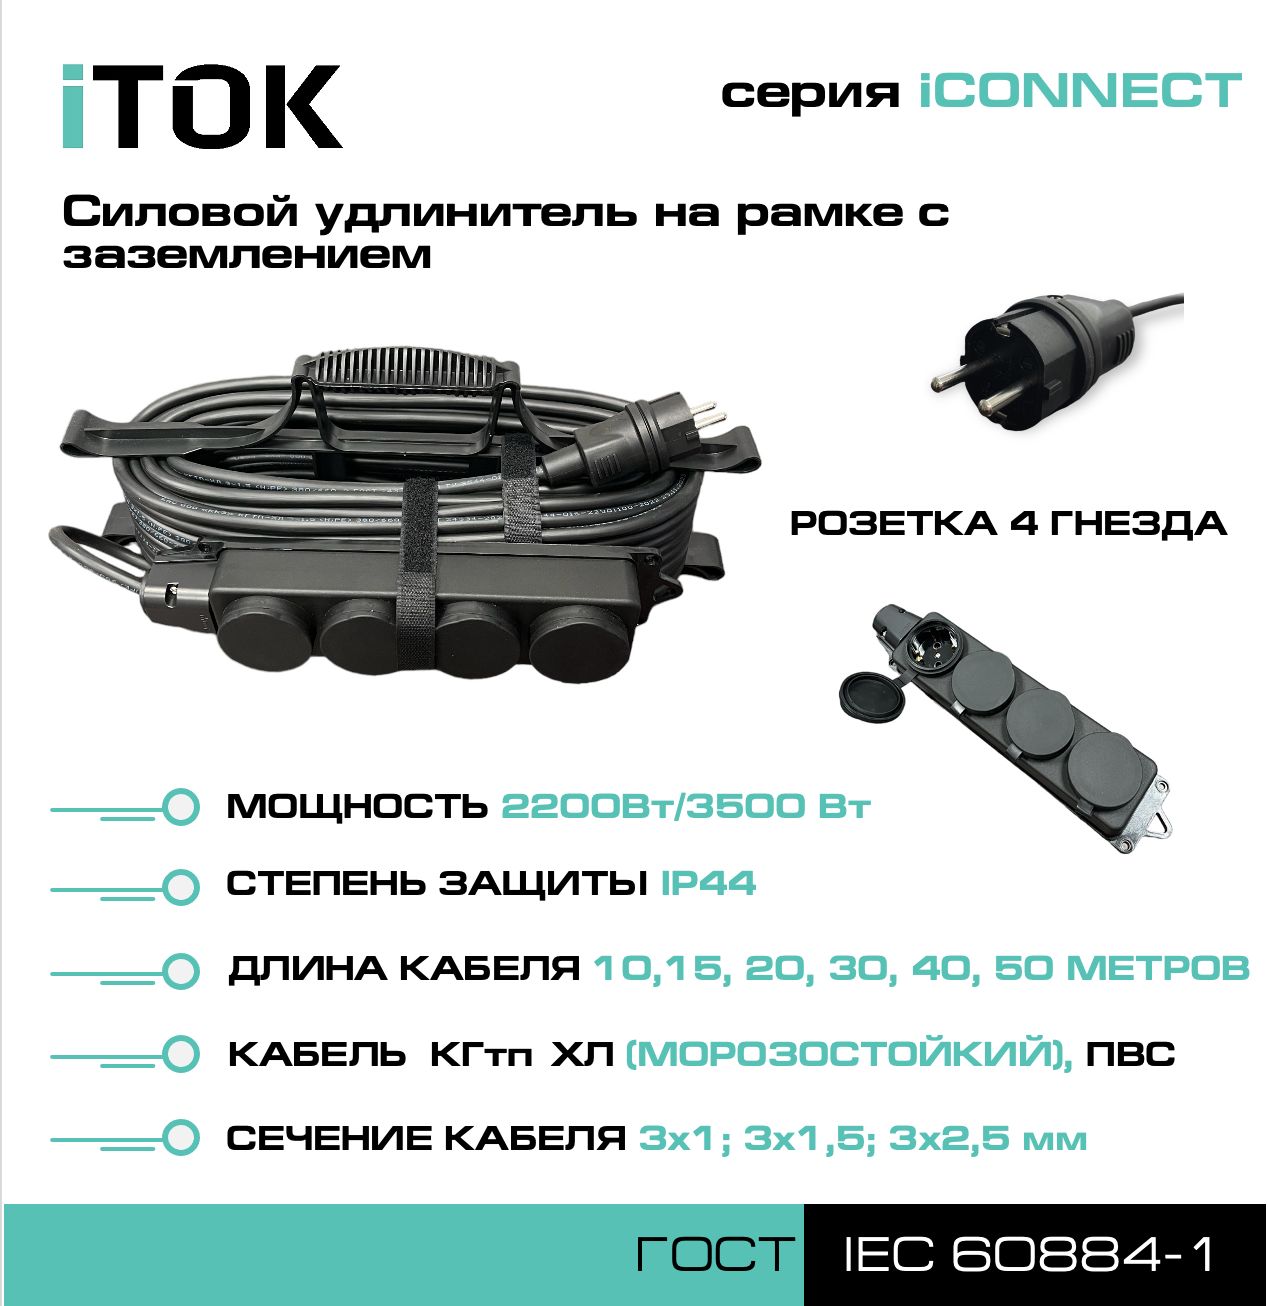 Удлинитель на рамке с заземлением серии iTOK iCONNECT ПВС 3х1,5 мм 4 гнезда IP44 15 м метчики для ремонта резьбы гнезда датчика кислорода ae